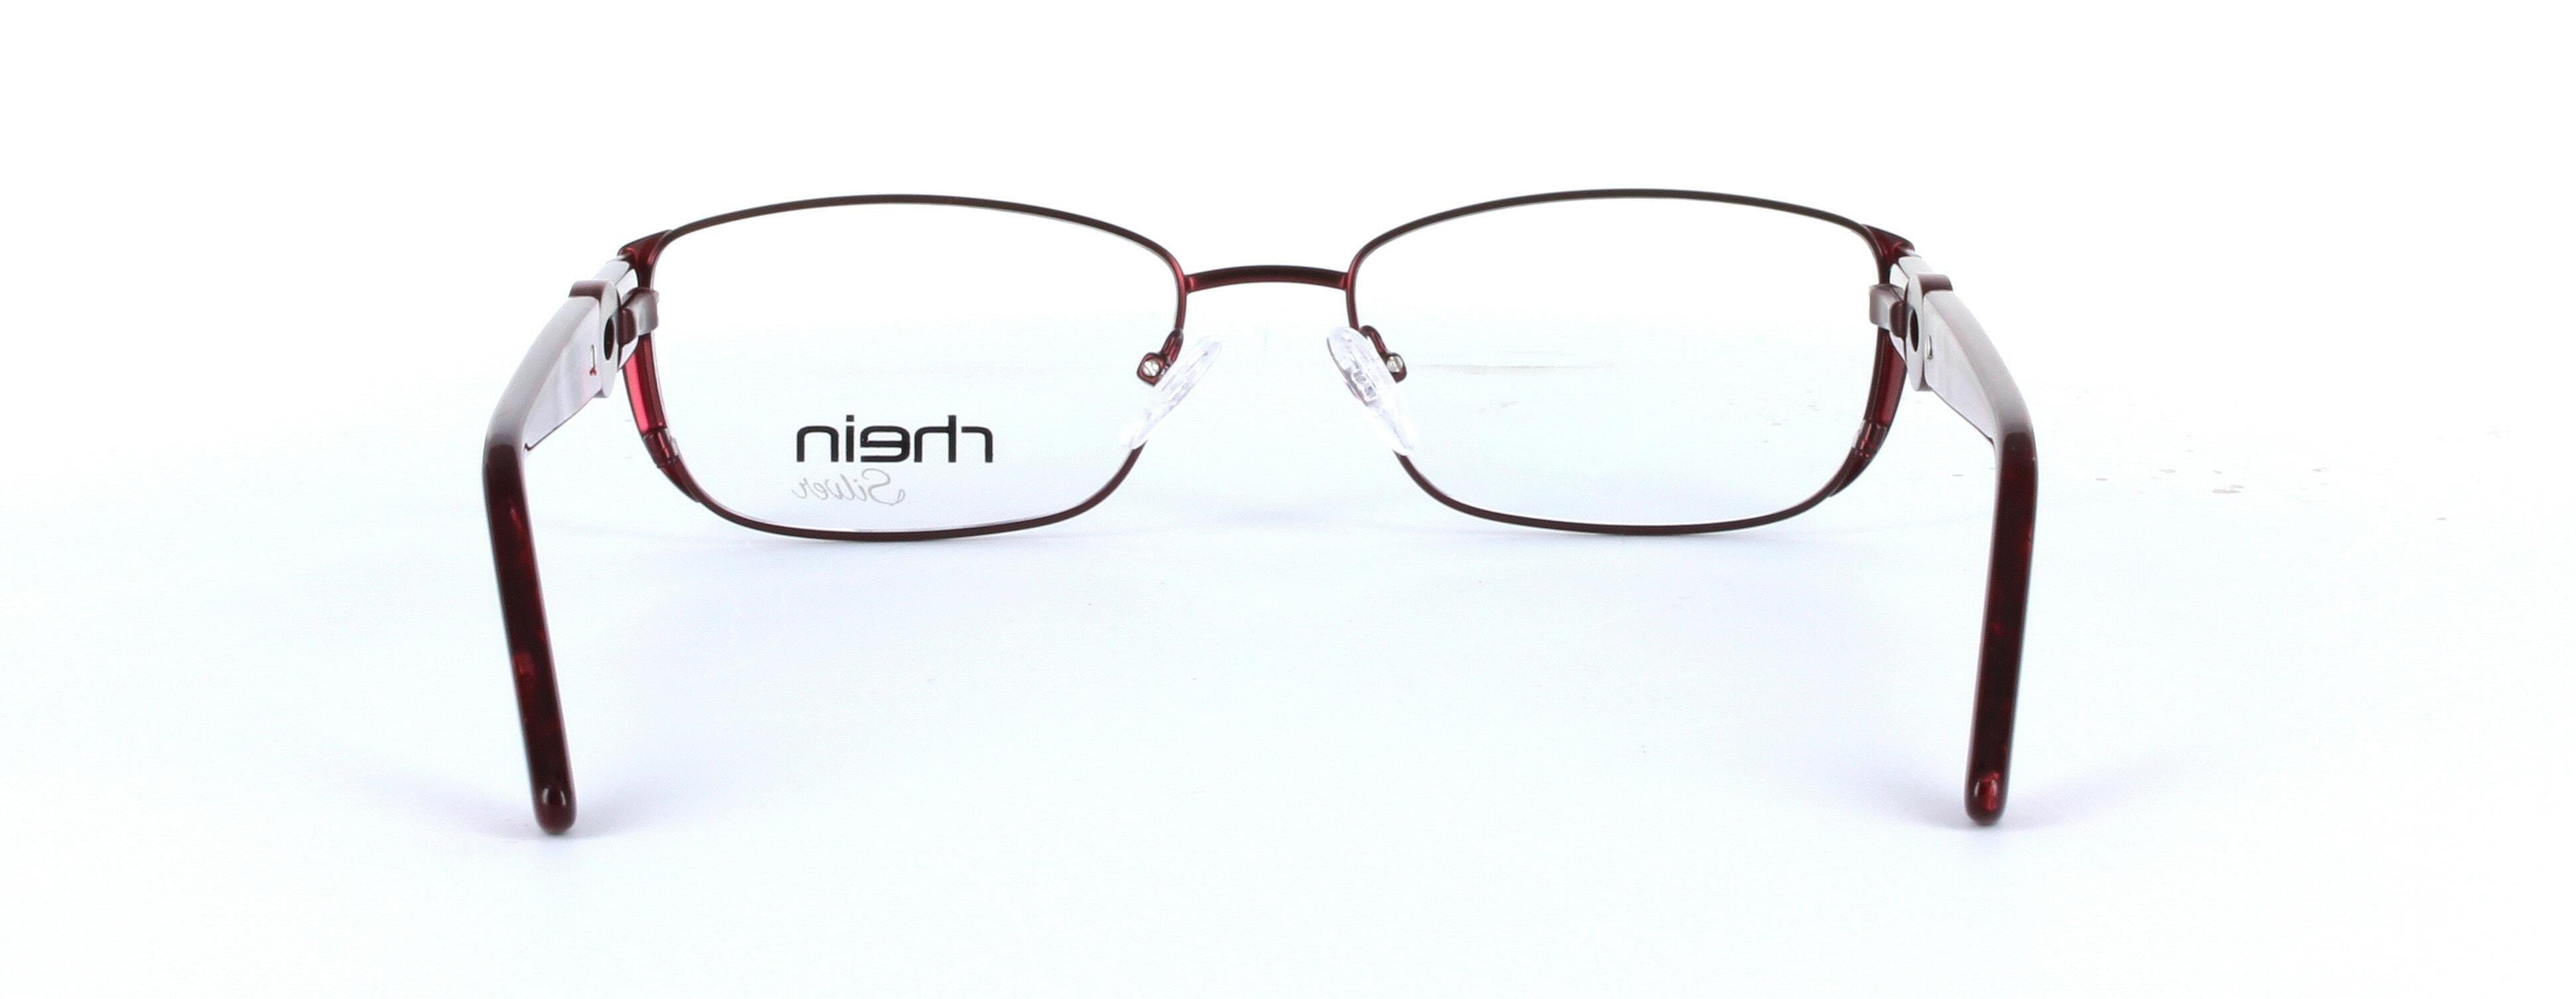 Amaris Burgundy Full Rim Oval Metal Glasses - Image View 3